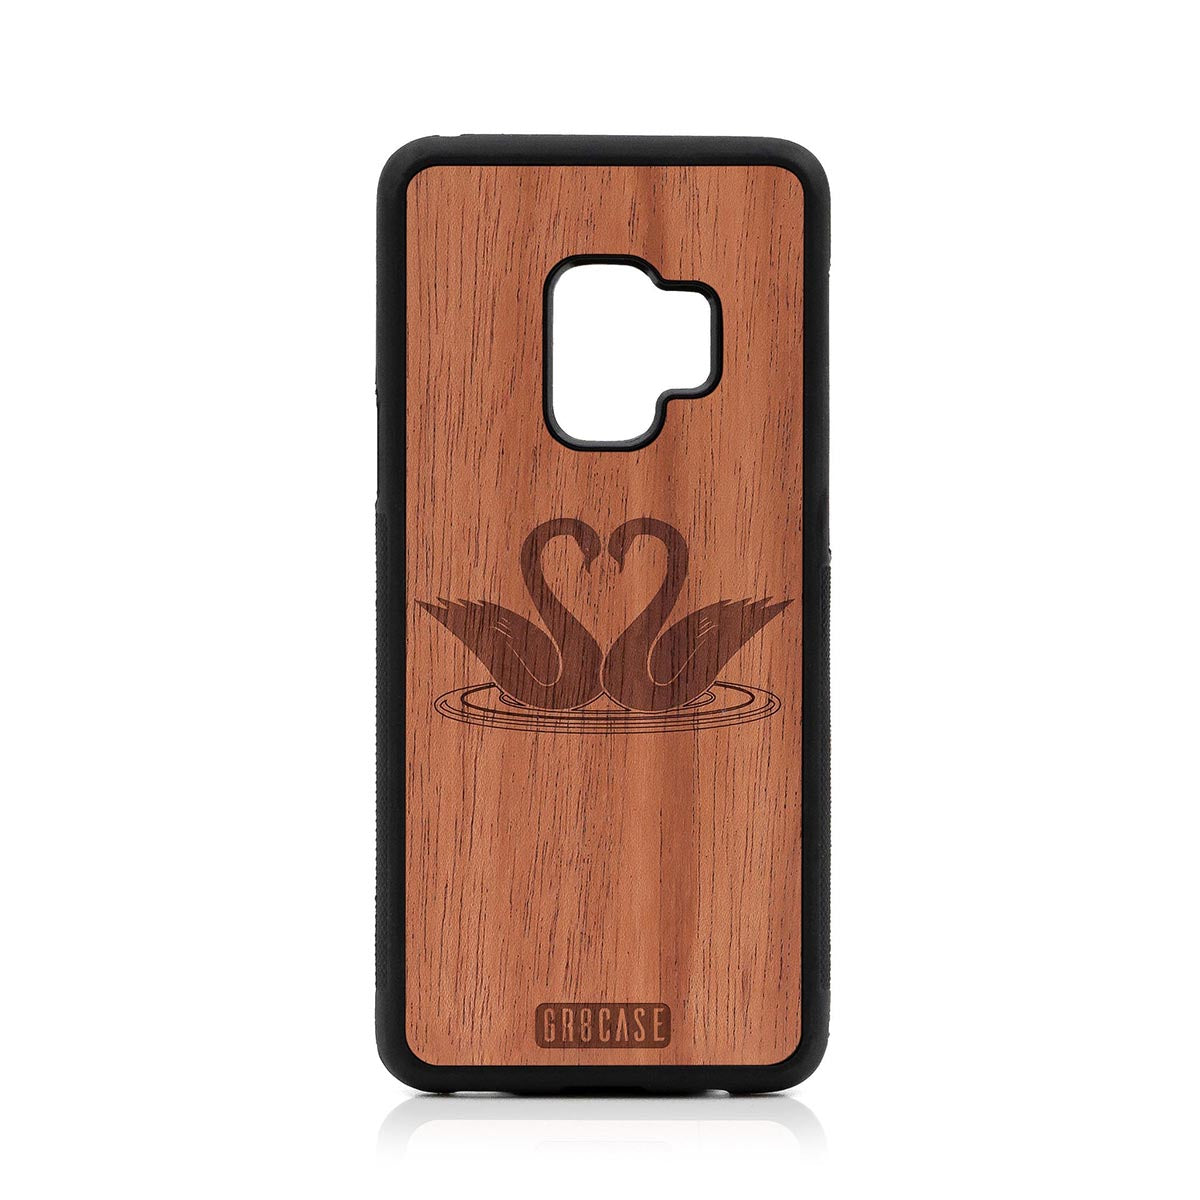 Swans Design Wood Case Samsung Galaxy S9